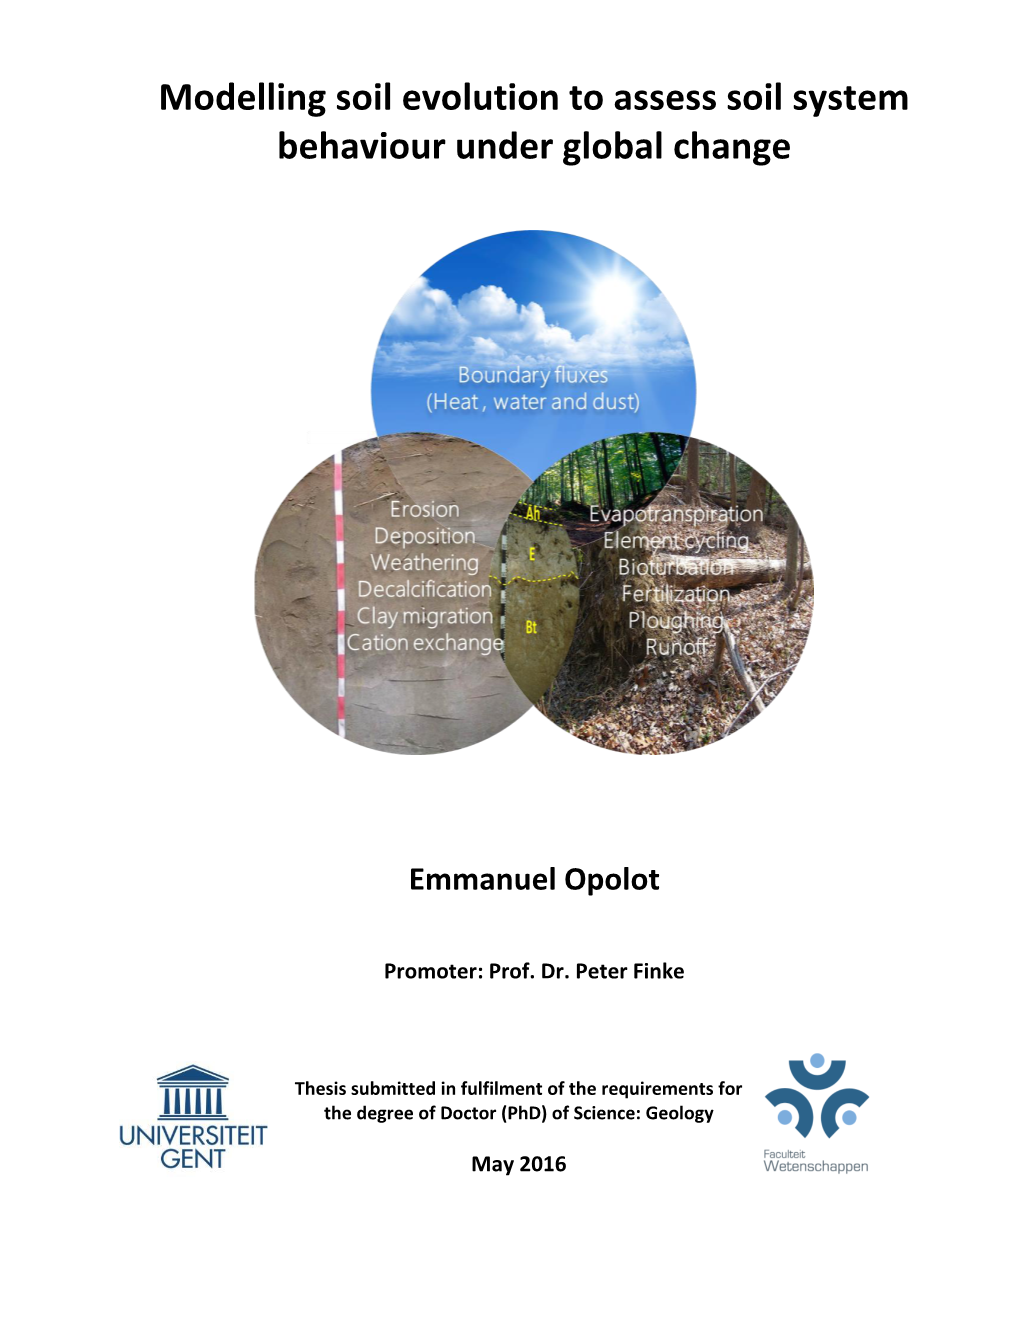 Modelling Soil Evolution to Assess Soil System Behaviour Under Global Change